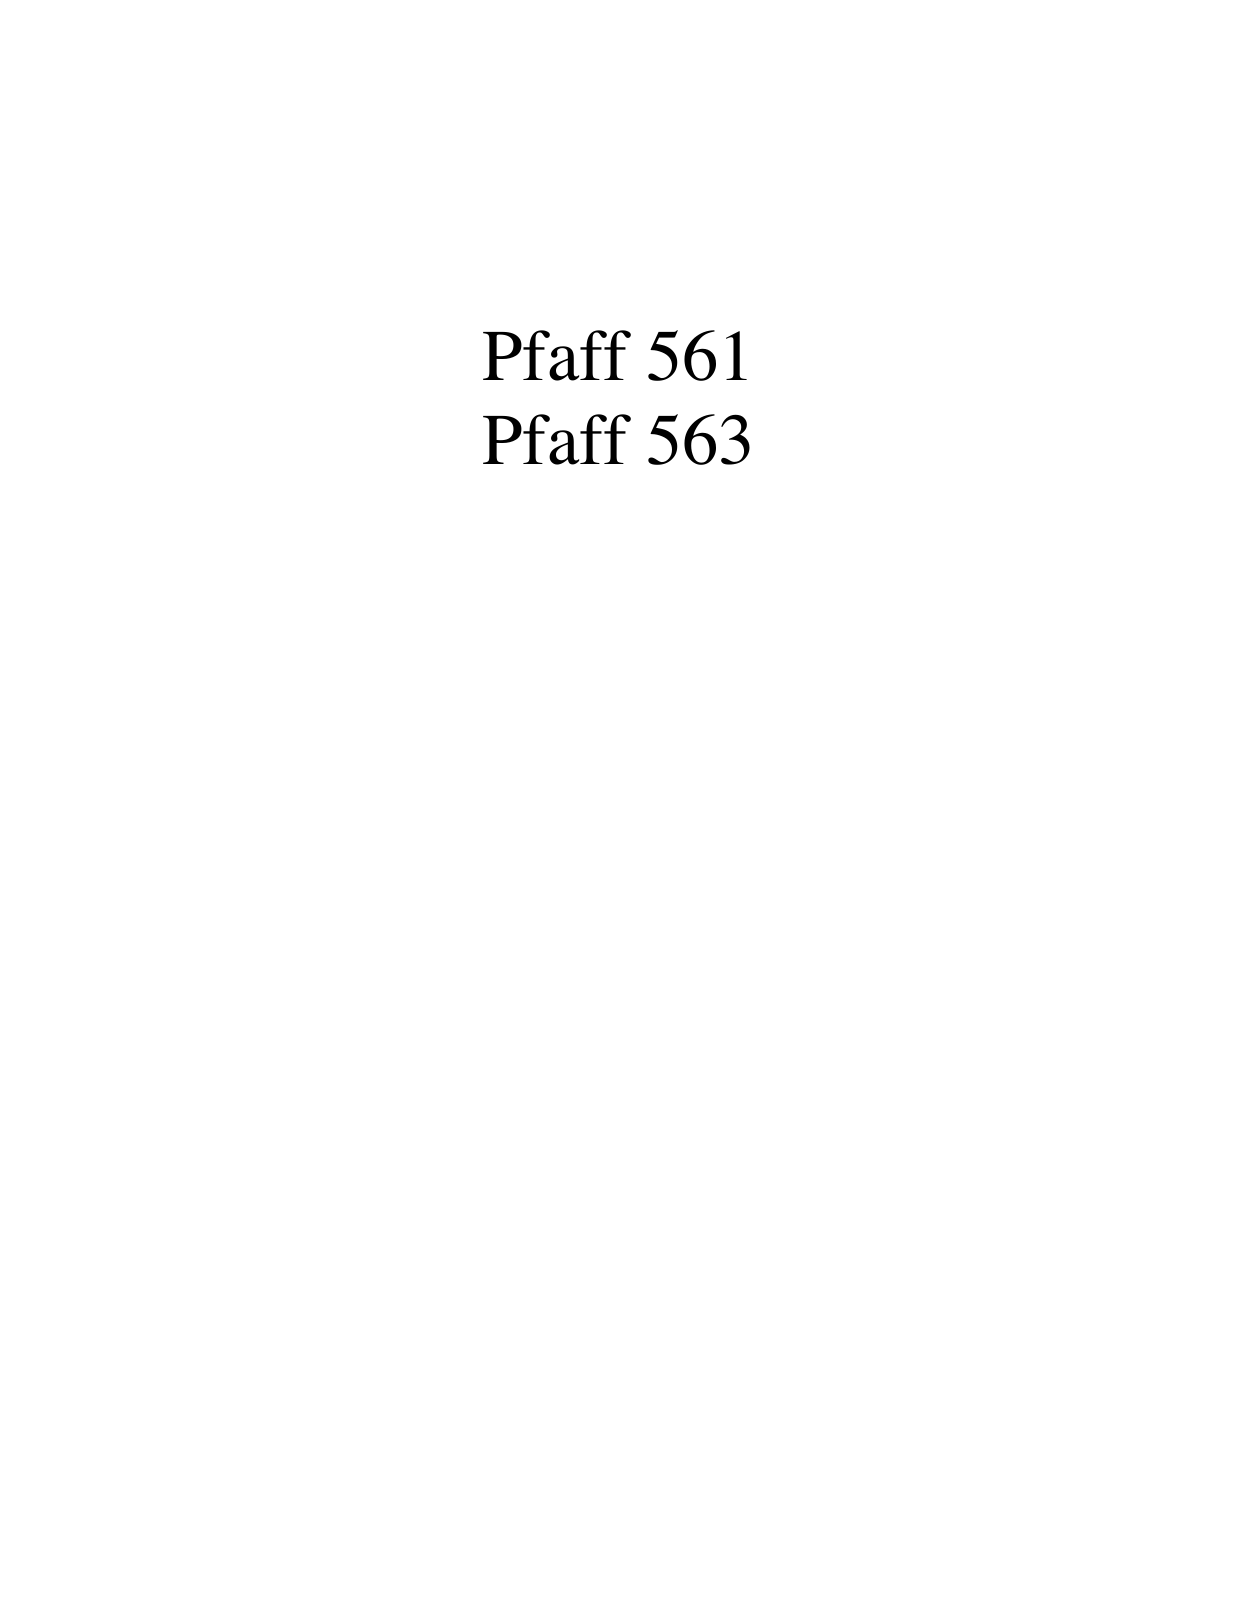 PFAFF 561, 563 Parts List